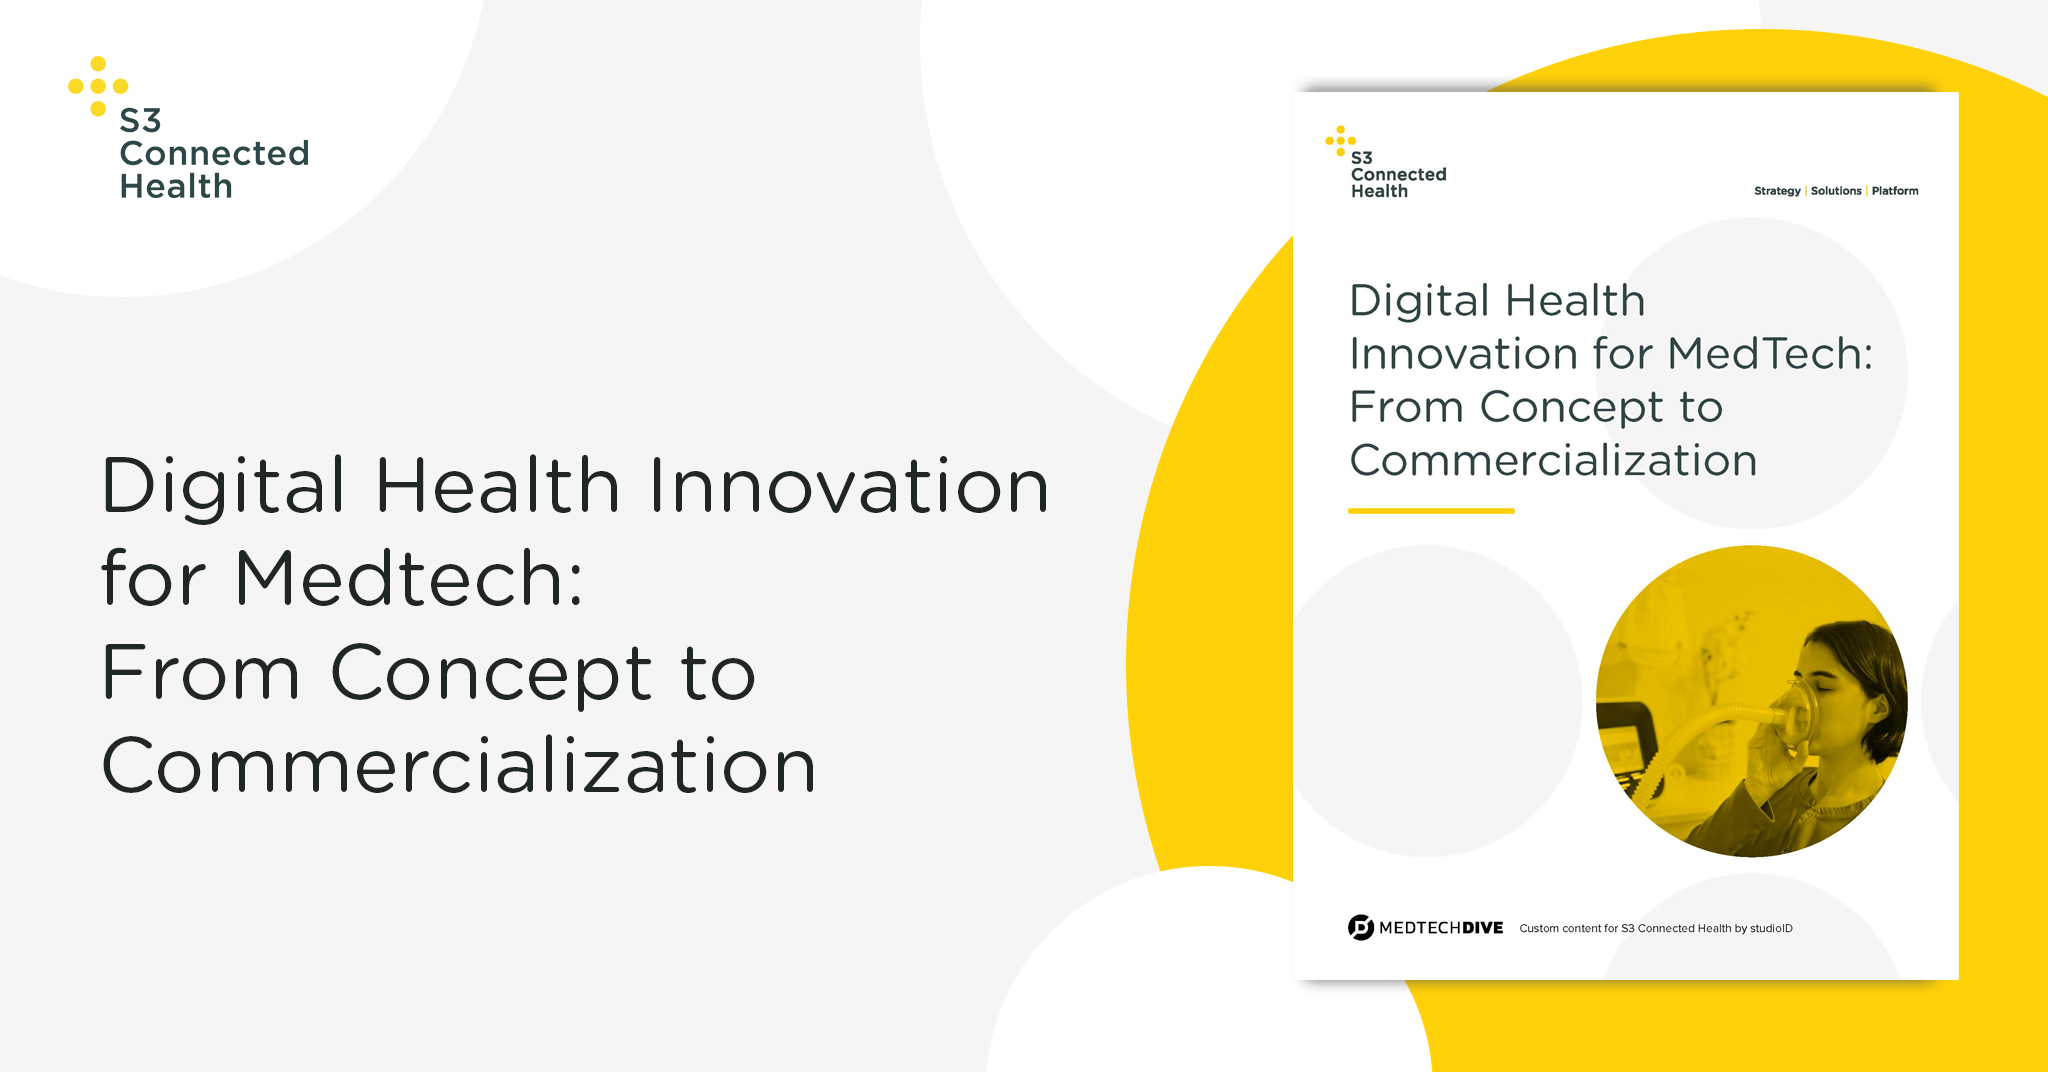 Digital Health Innovation for MedTech whitepaper